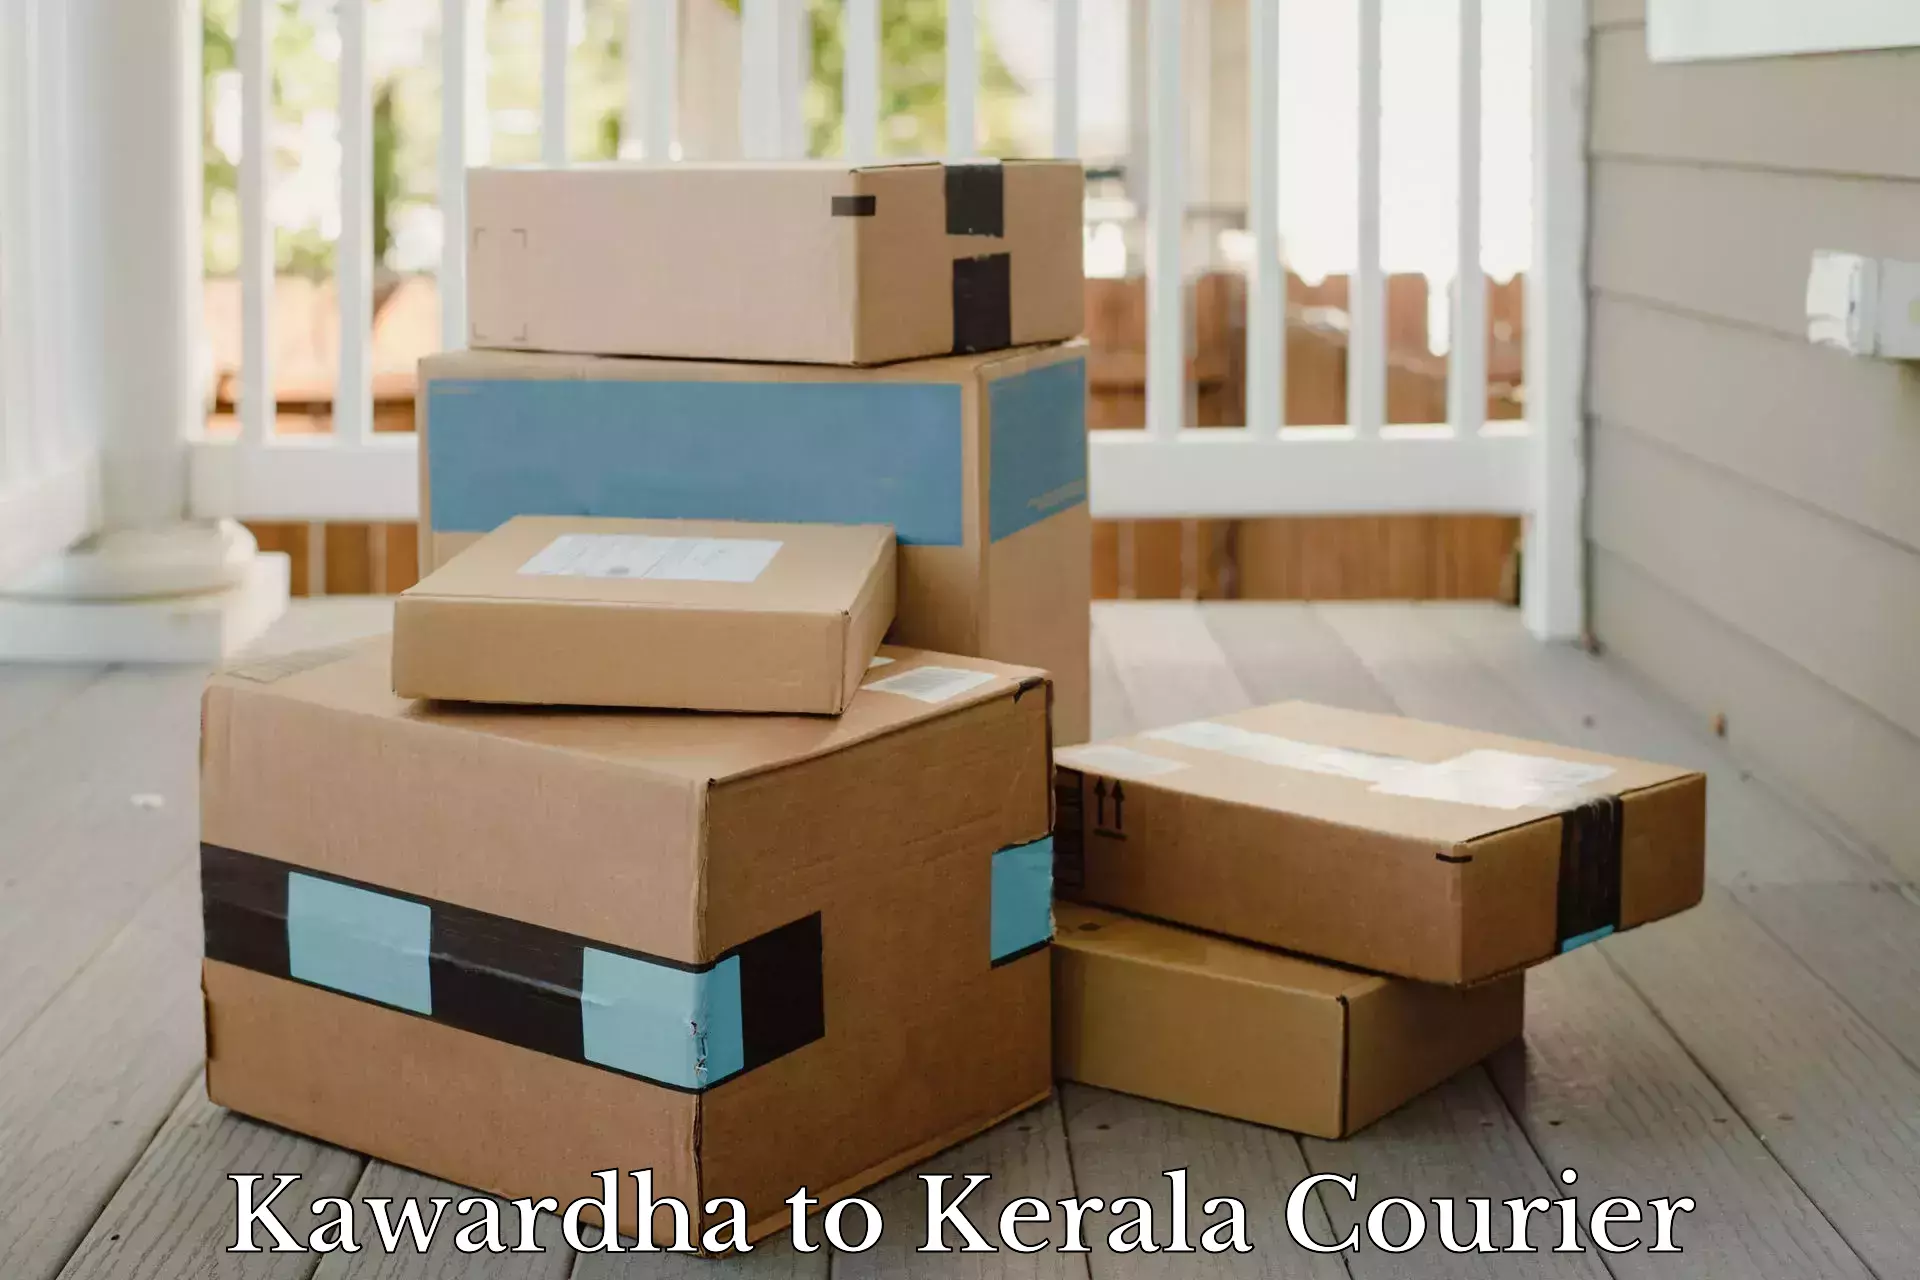 Logistics efficiency Kawardha to Arimbur